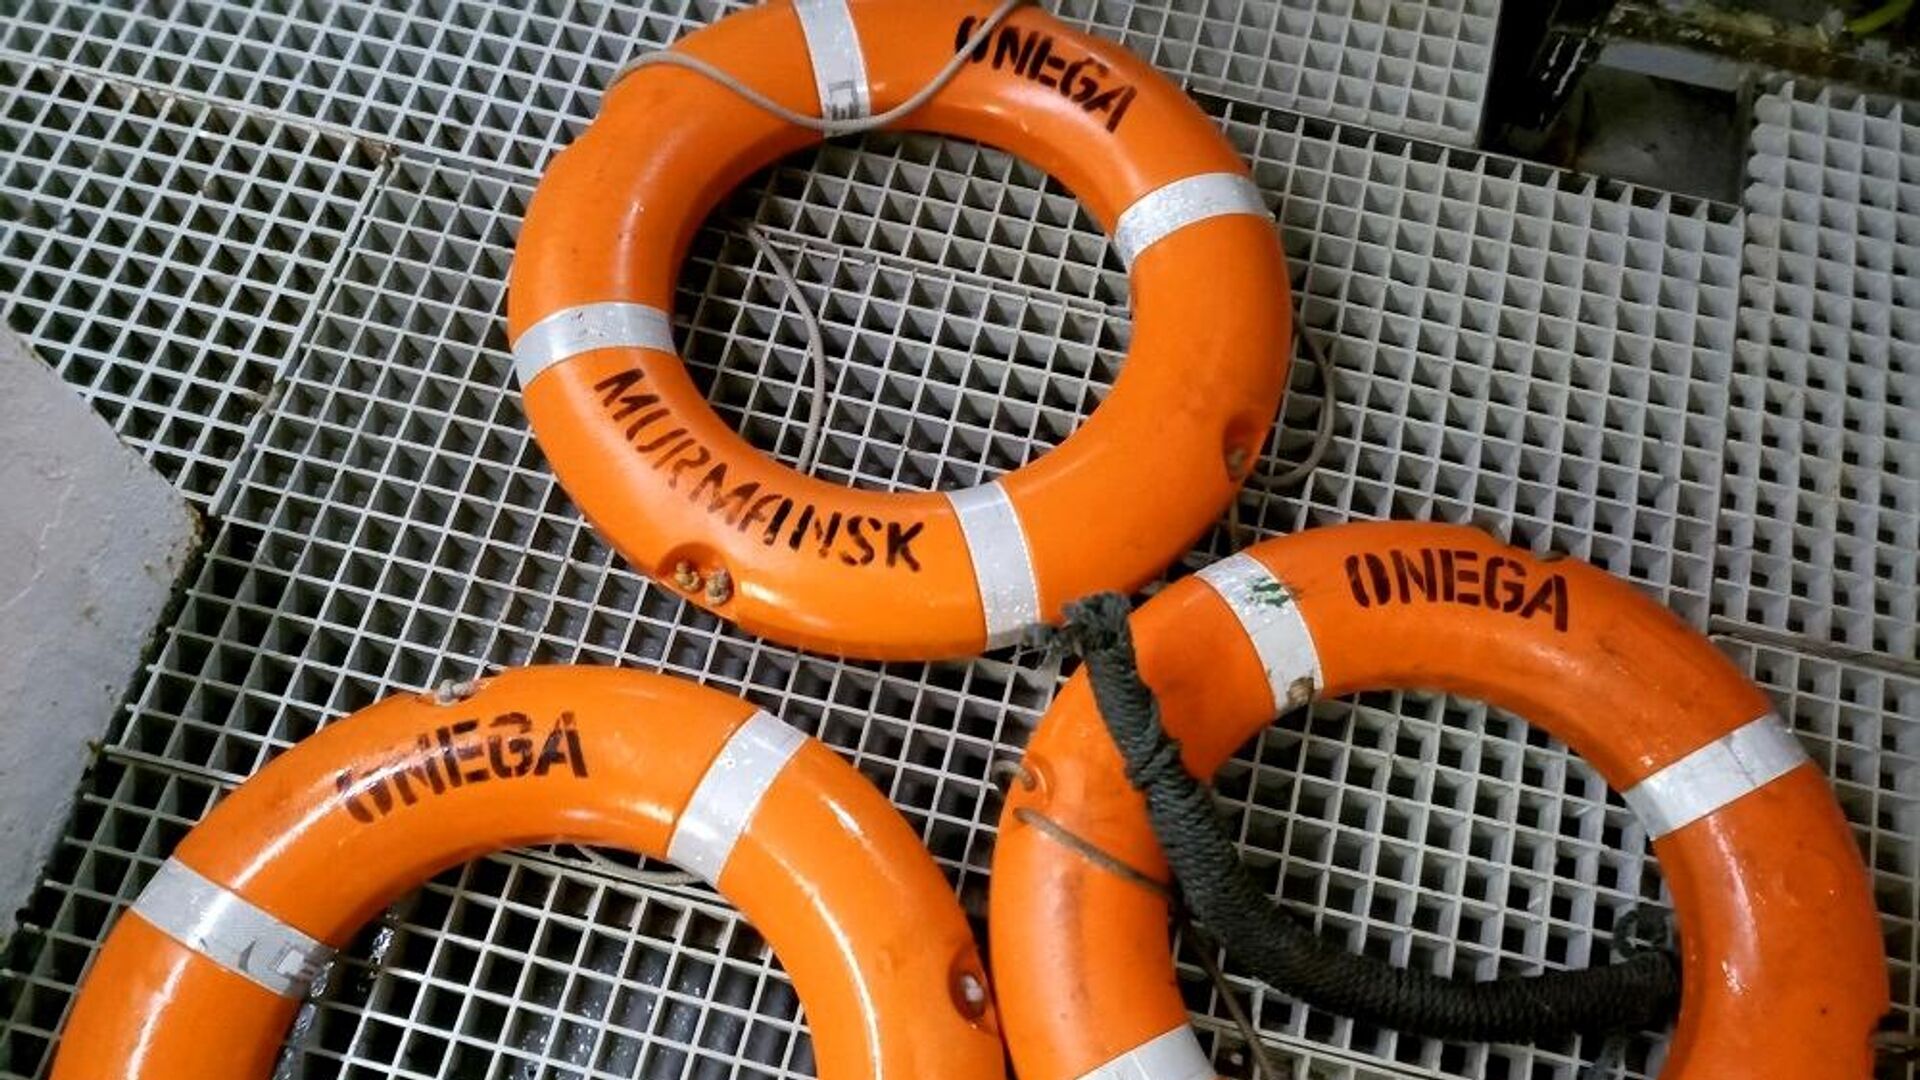 Спасательные круги с затонувшего рыболовного судна Онега, обнаруженные в ходе поисковой операции в Баренцевом море - РИА Новости, 1920, 30.12.2020